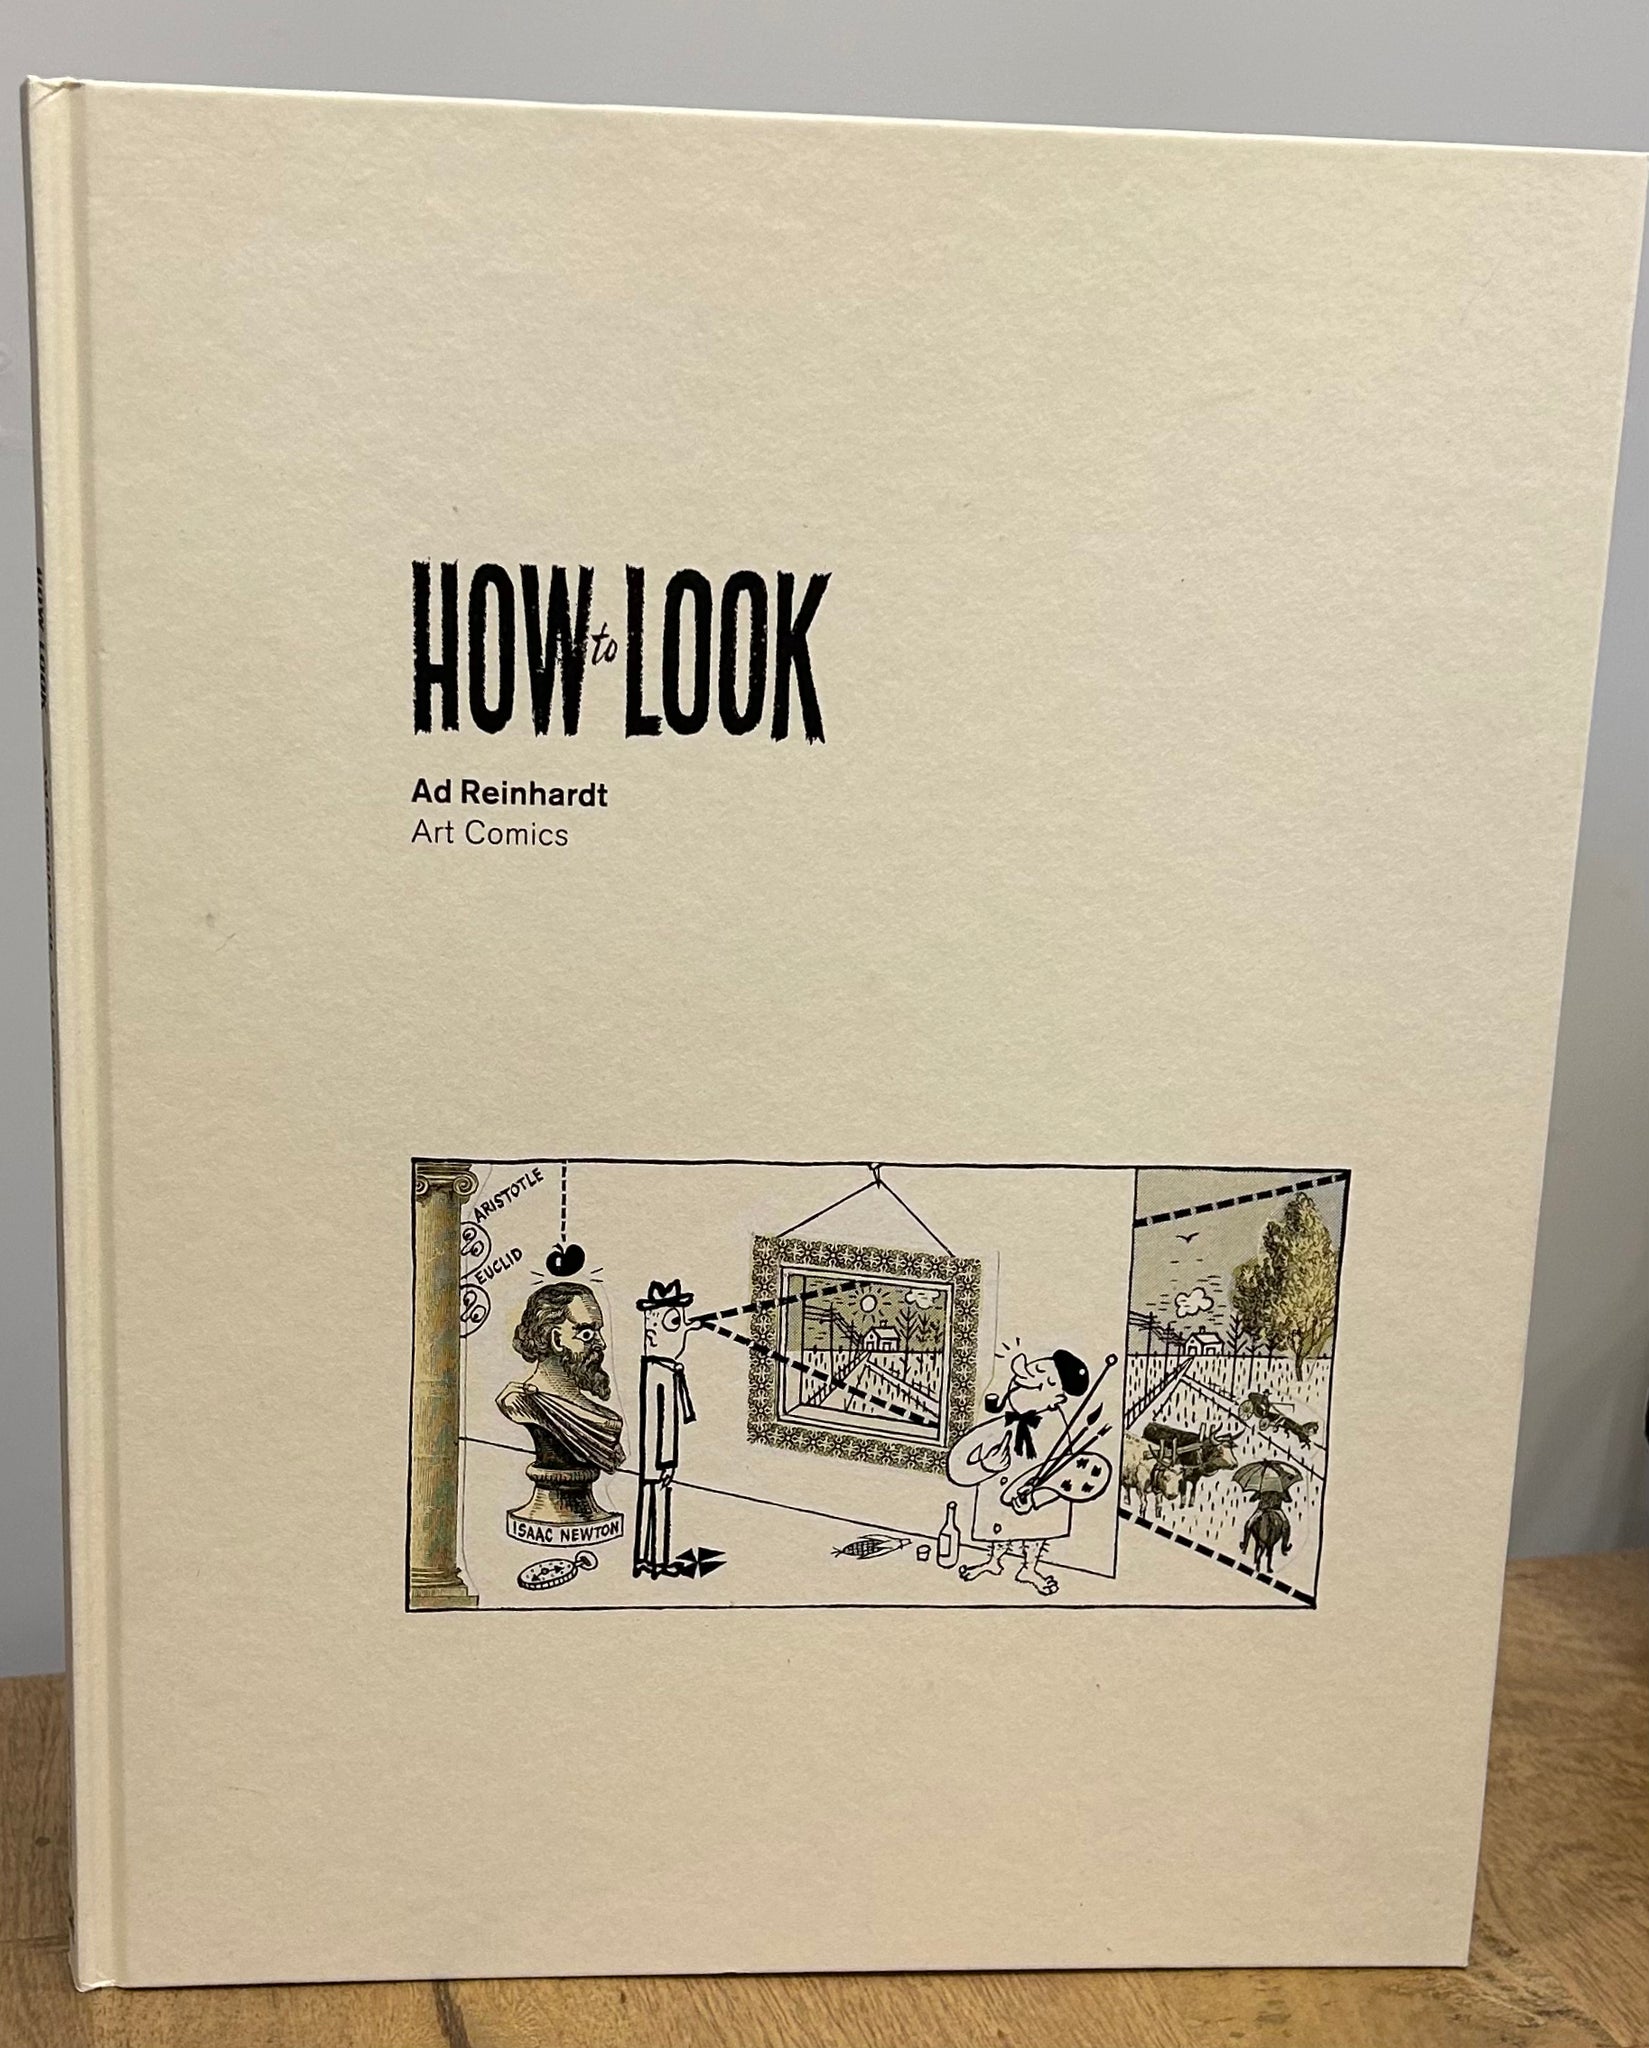 How to Look: Ad Reinhardt, Art Comics